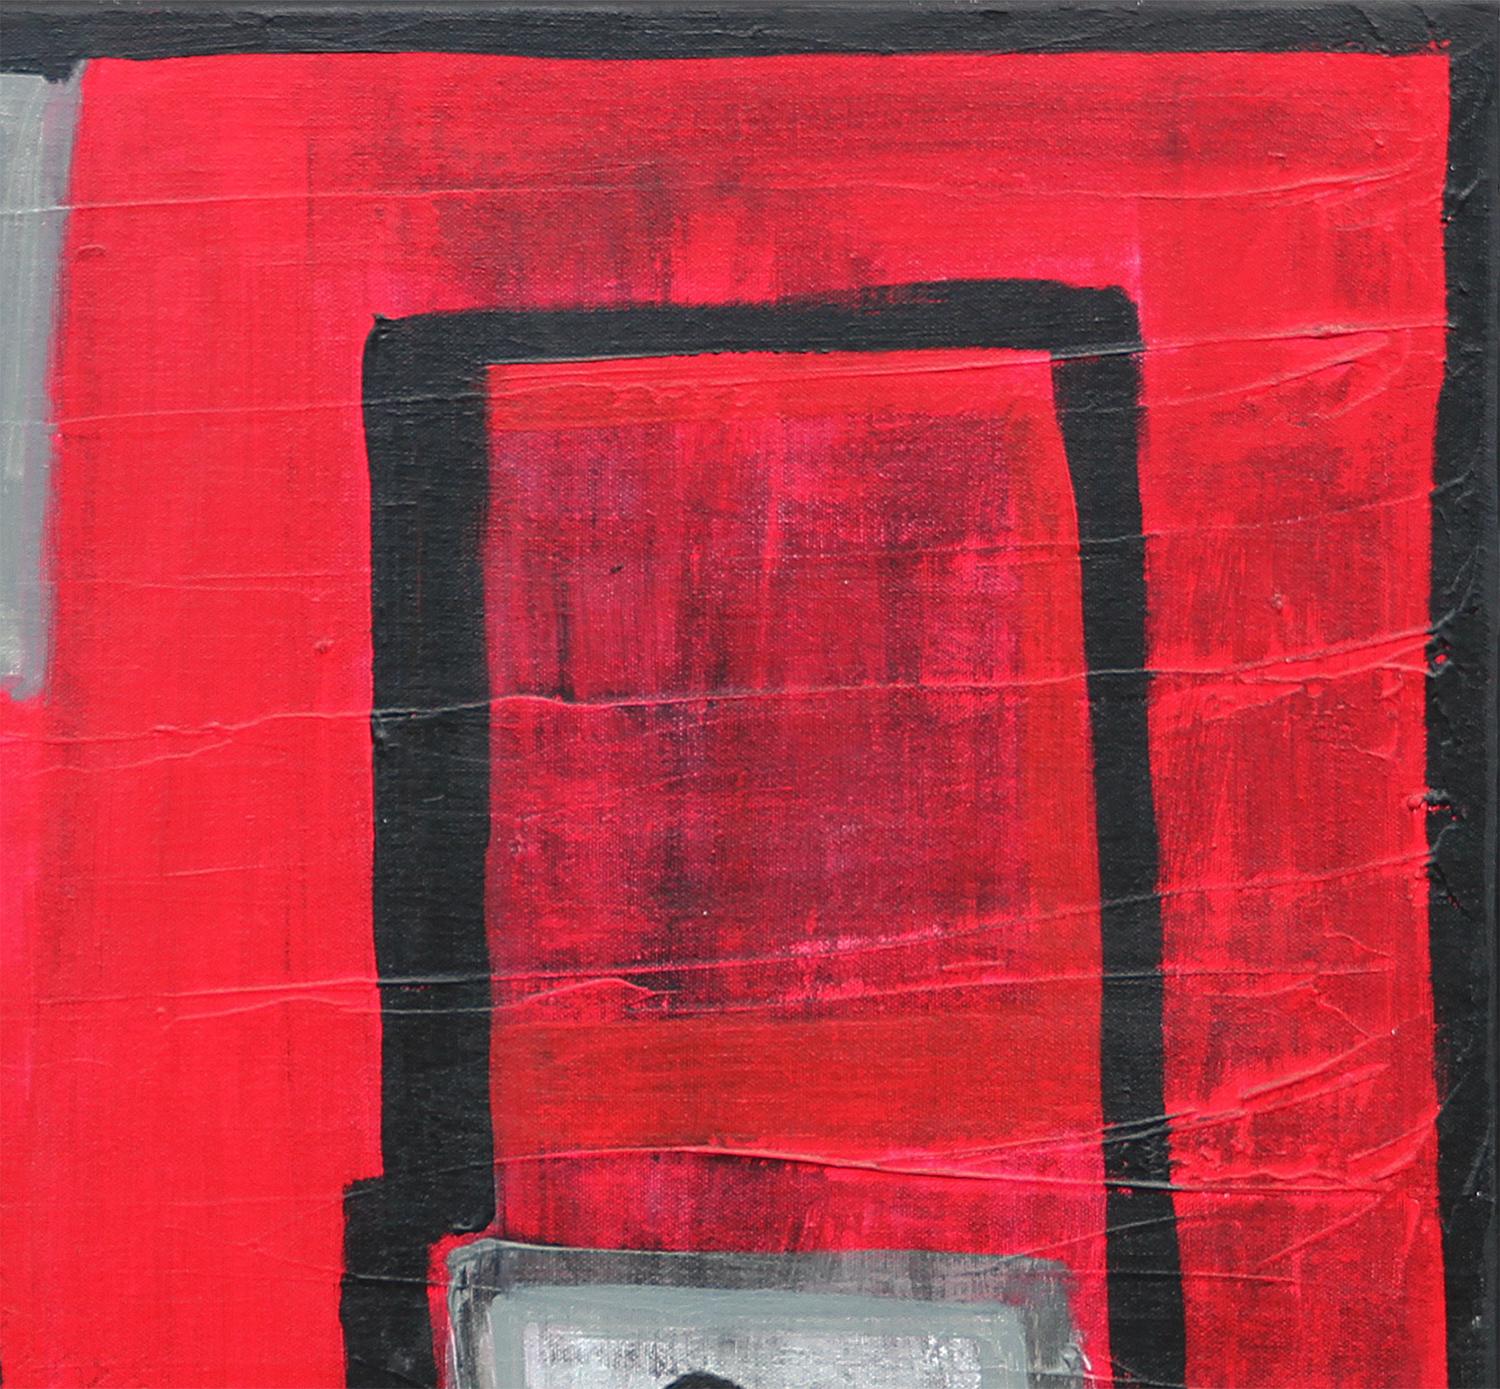 Rotes, blaues und schwarzes abstraktes figuratives Gemälde des texanischen Künstlers Paul Reeves. Das Werk zeigt eine zentrale Figur mit dem Text 